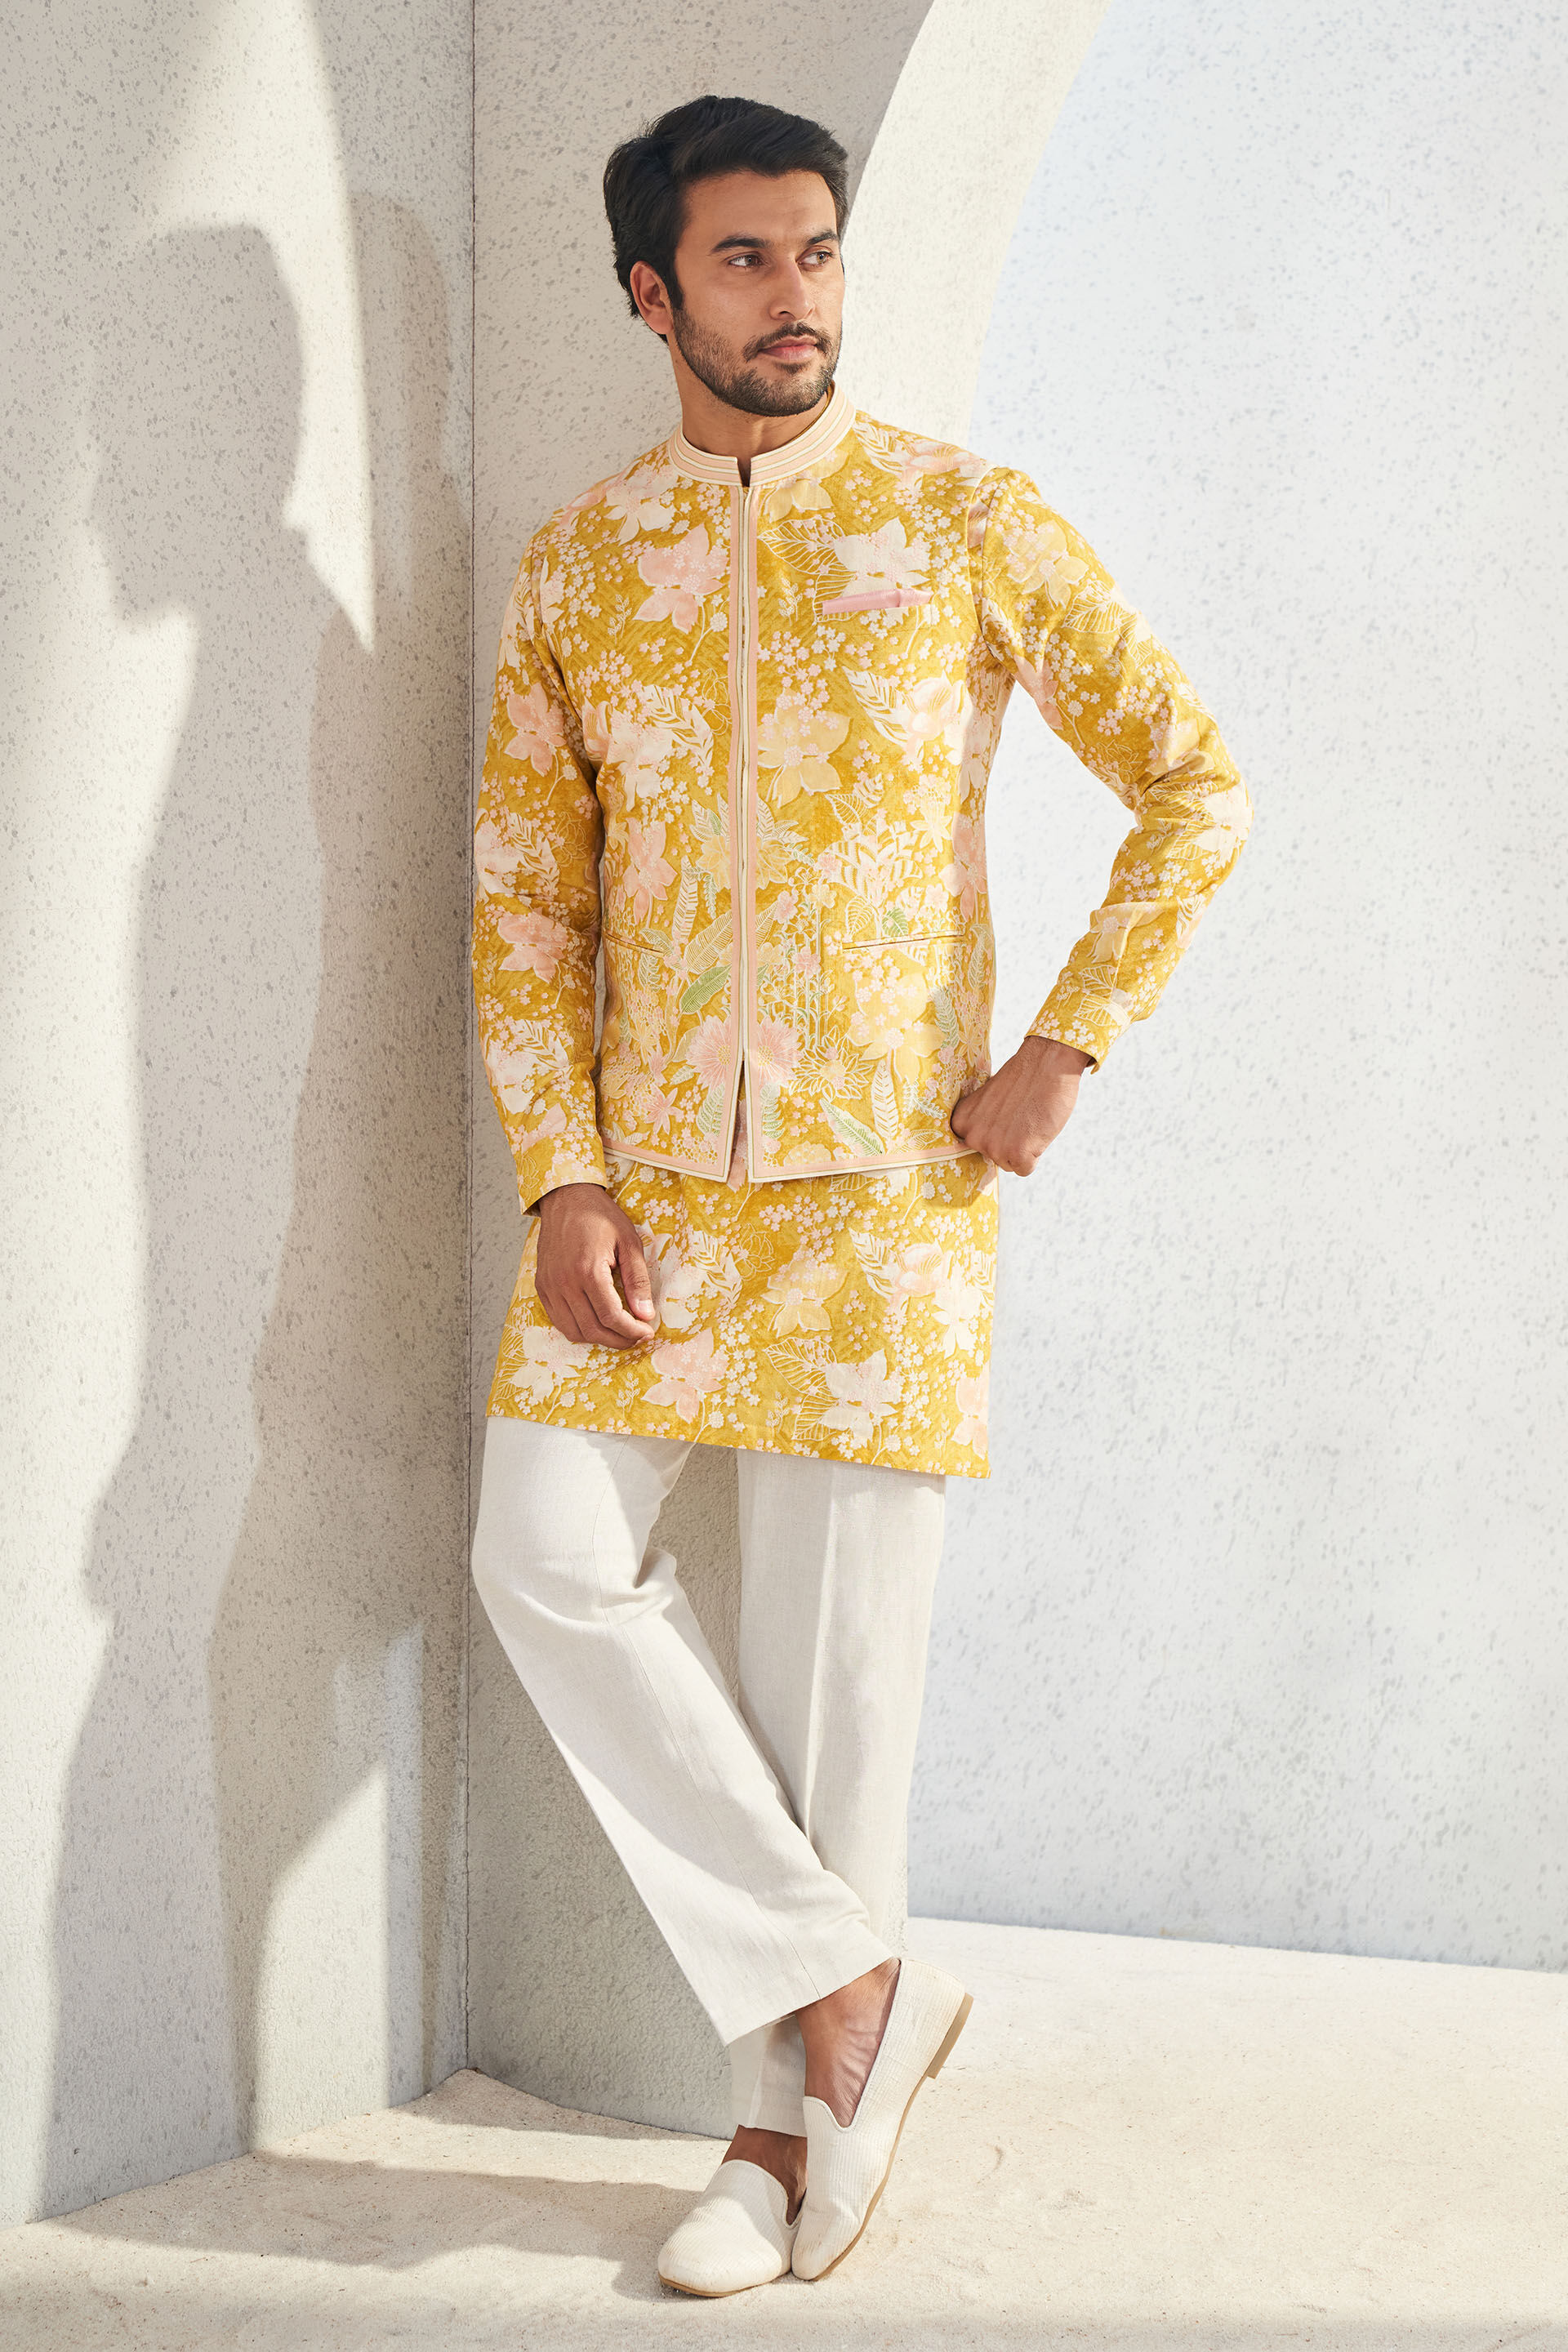 Sleeveless Mens Mustard Cotton Jute Nehru Jacket, Size : 46, Gender : Male  at Rs 595 / Piece in delhi